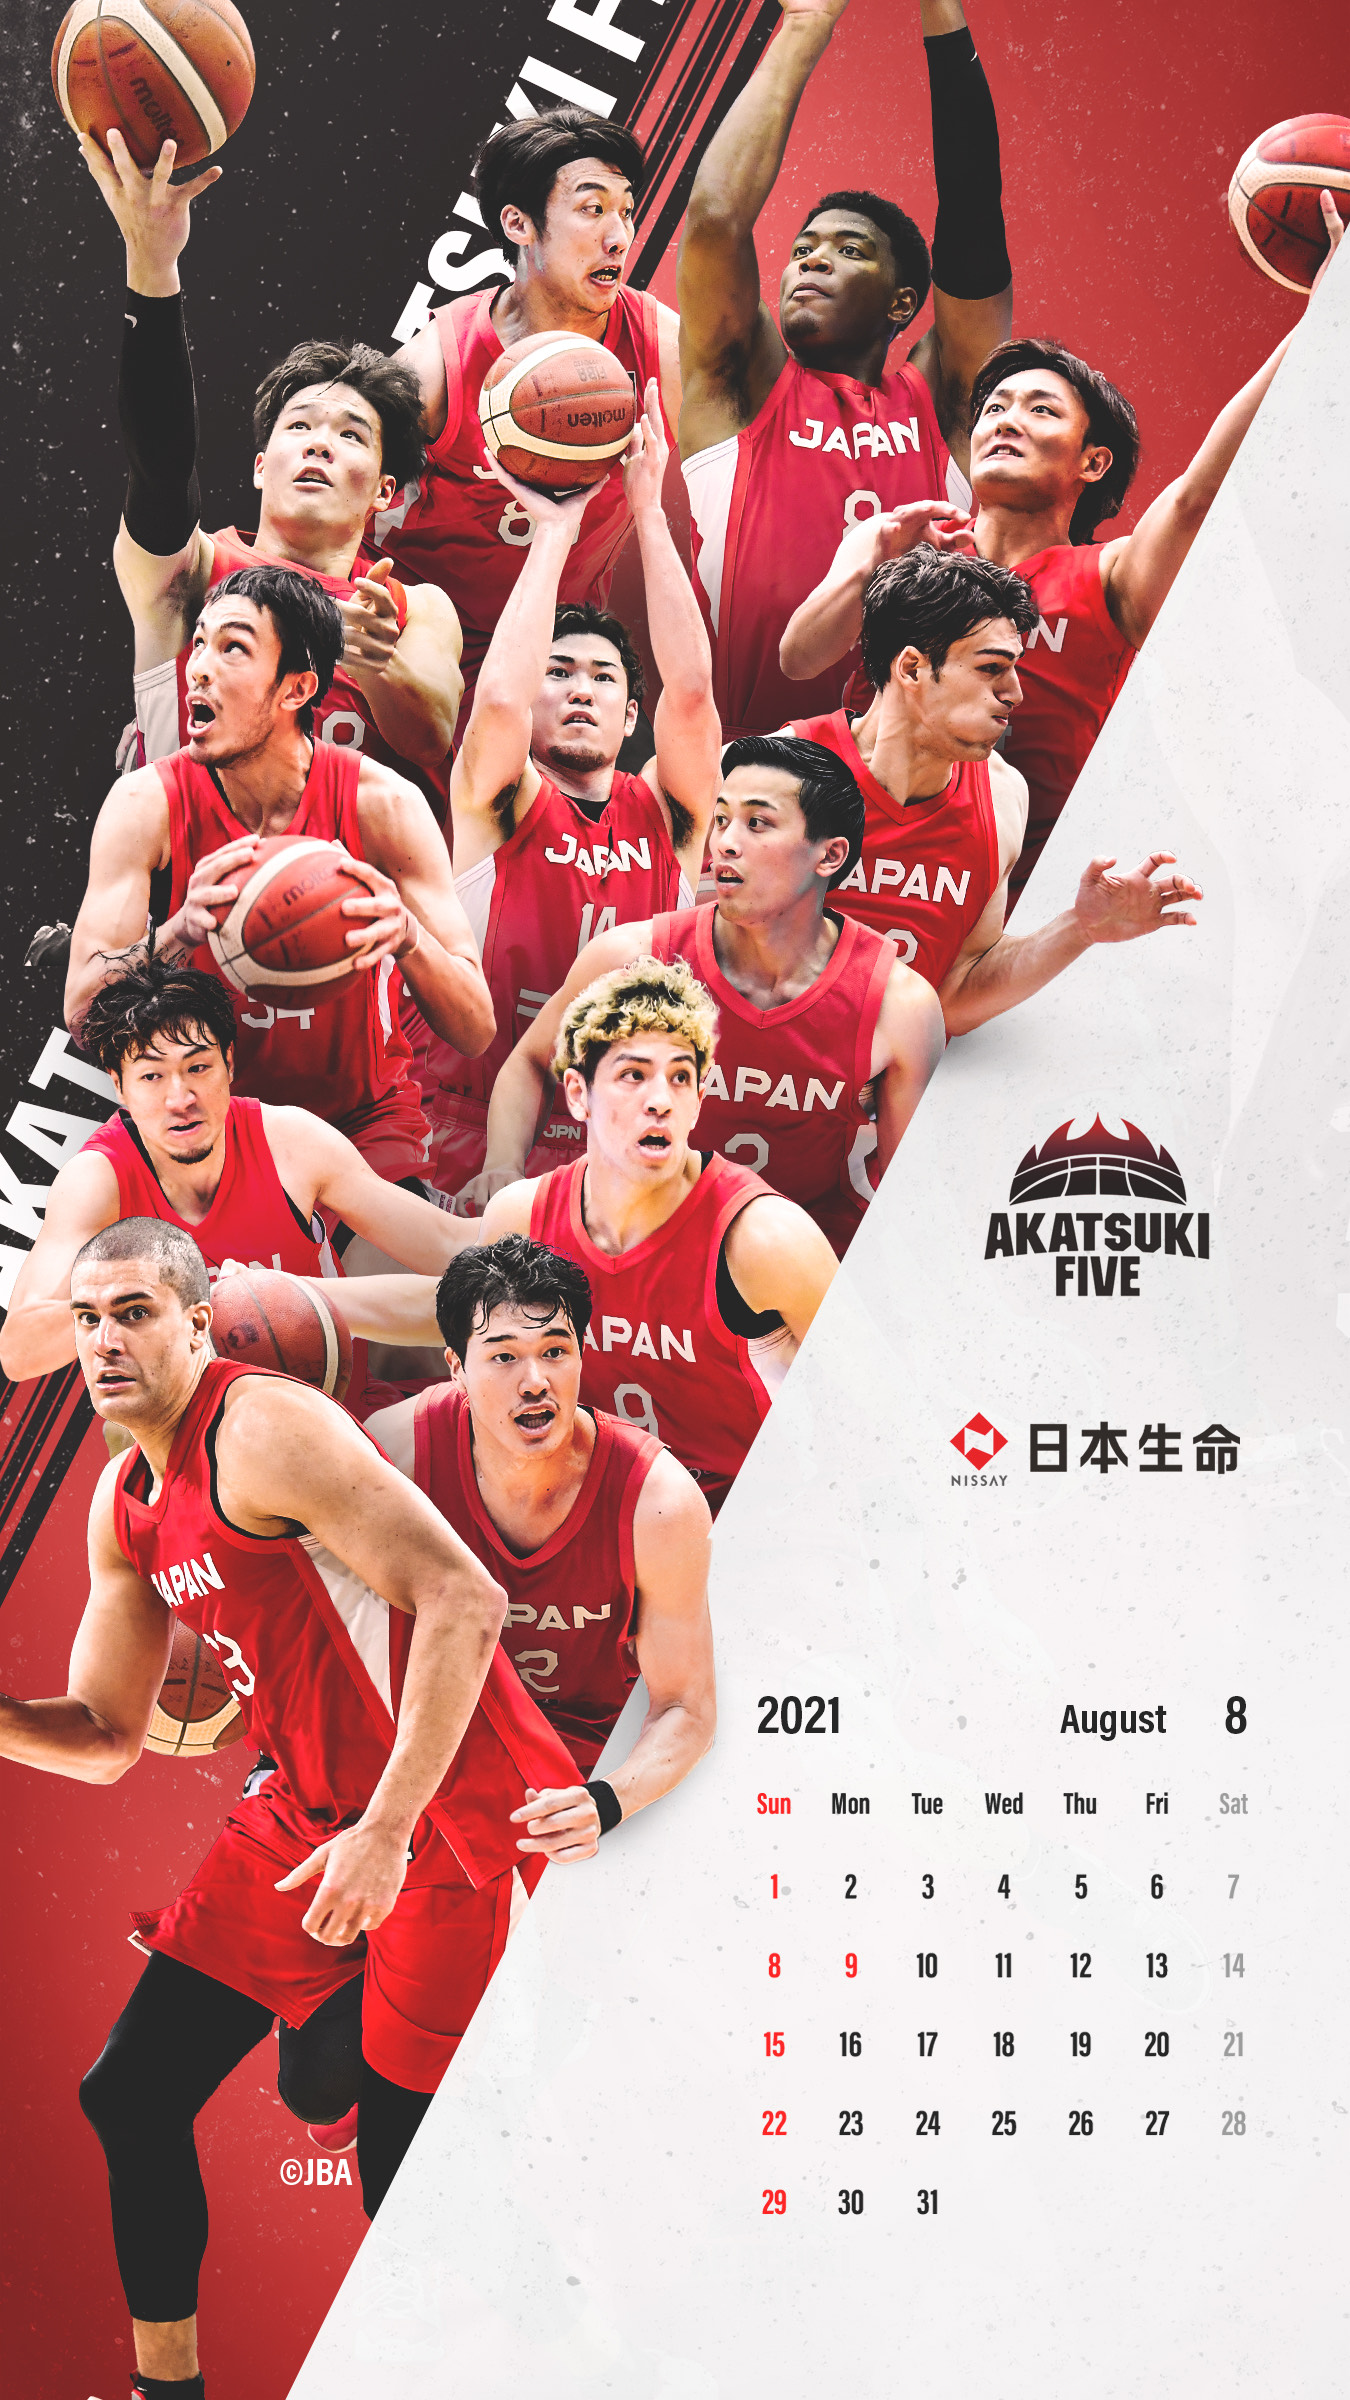 日本生命 バスケ 日本代表選手にエールを ８月になりました 今月も デジタルカレンダー を作成しましたので是非ご活用ください Jba 壁紙 待受 バスケットボール Akatsukifive エールを送ろう 日本生命 Playsupport バスケで日本を元気に